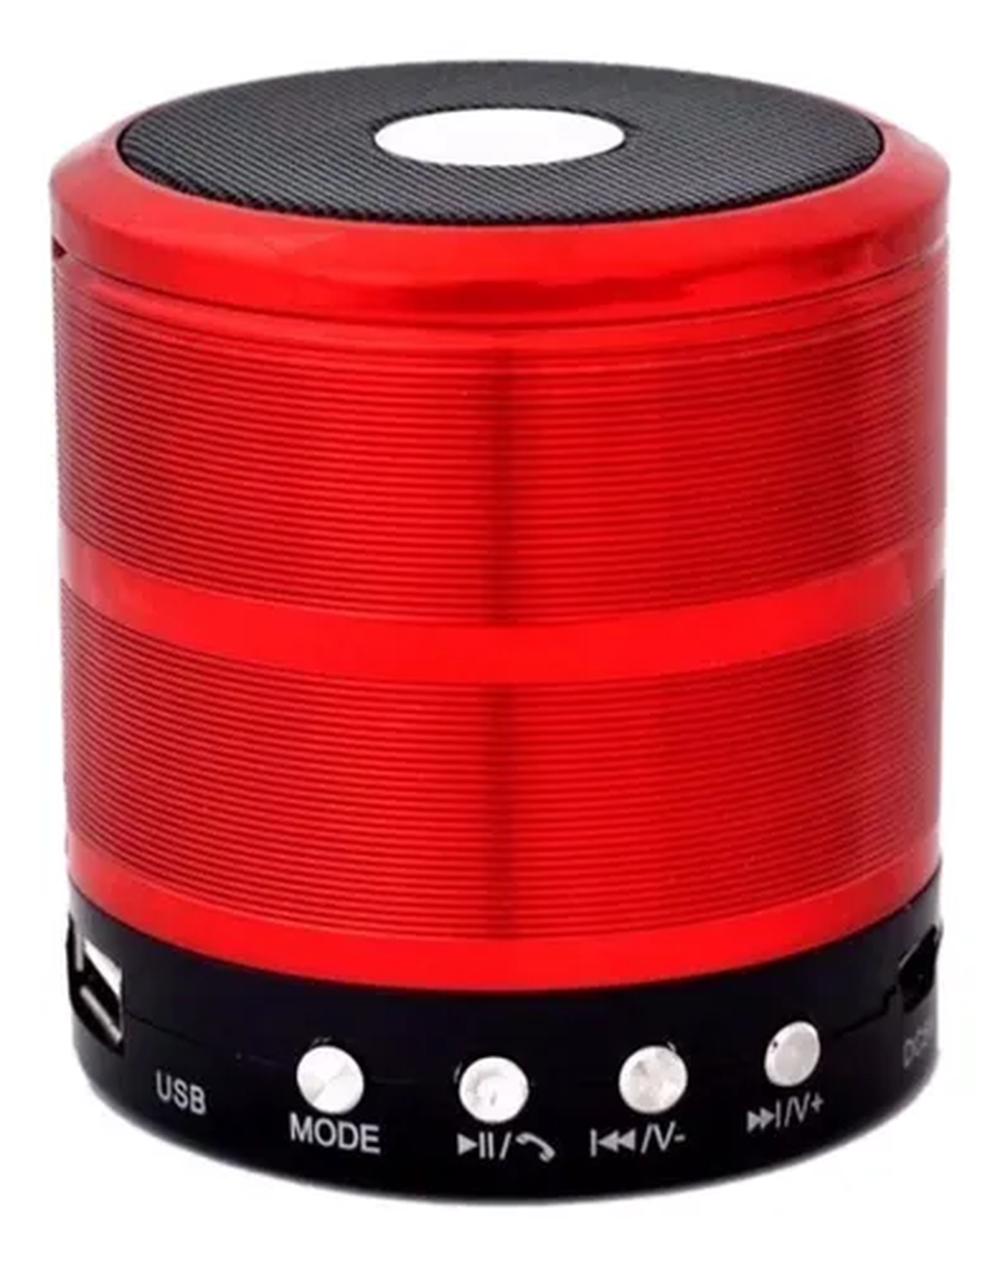 Alto-falante Mini Speaker WS-887 com bluetooth